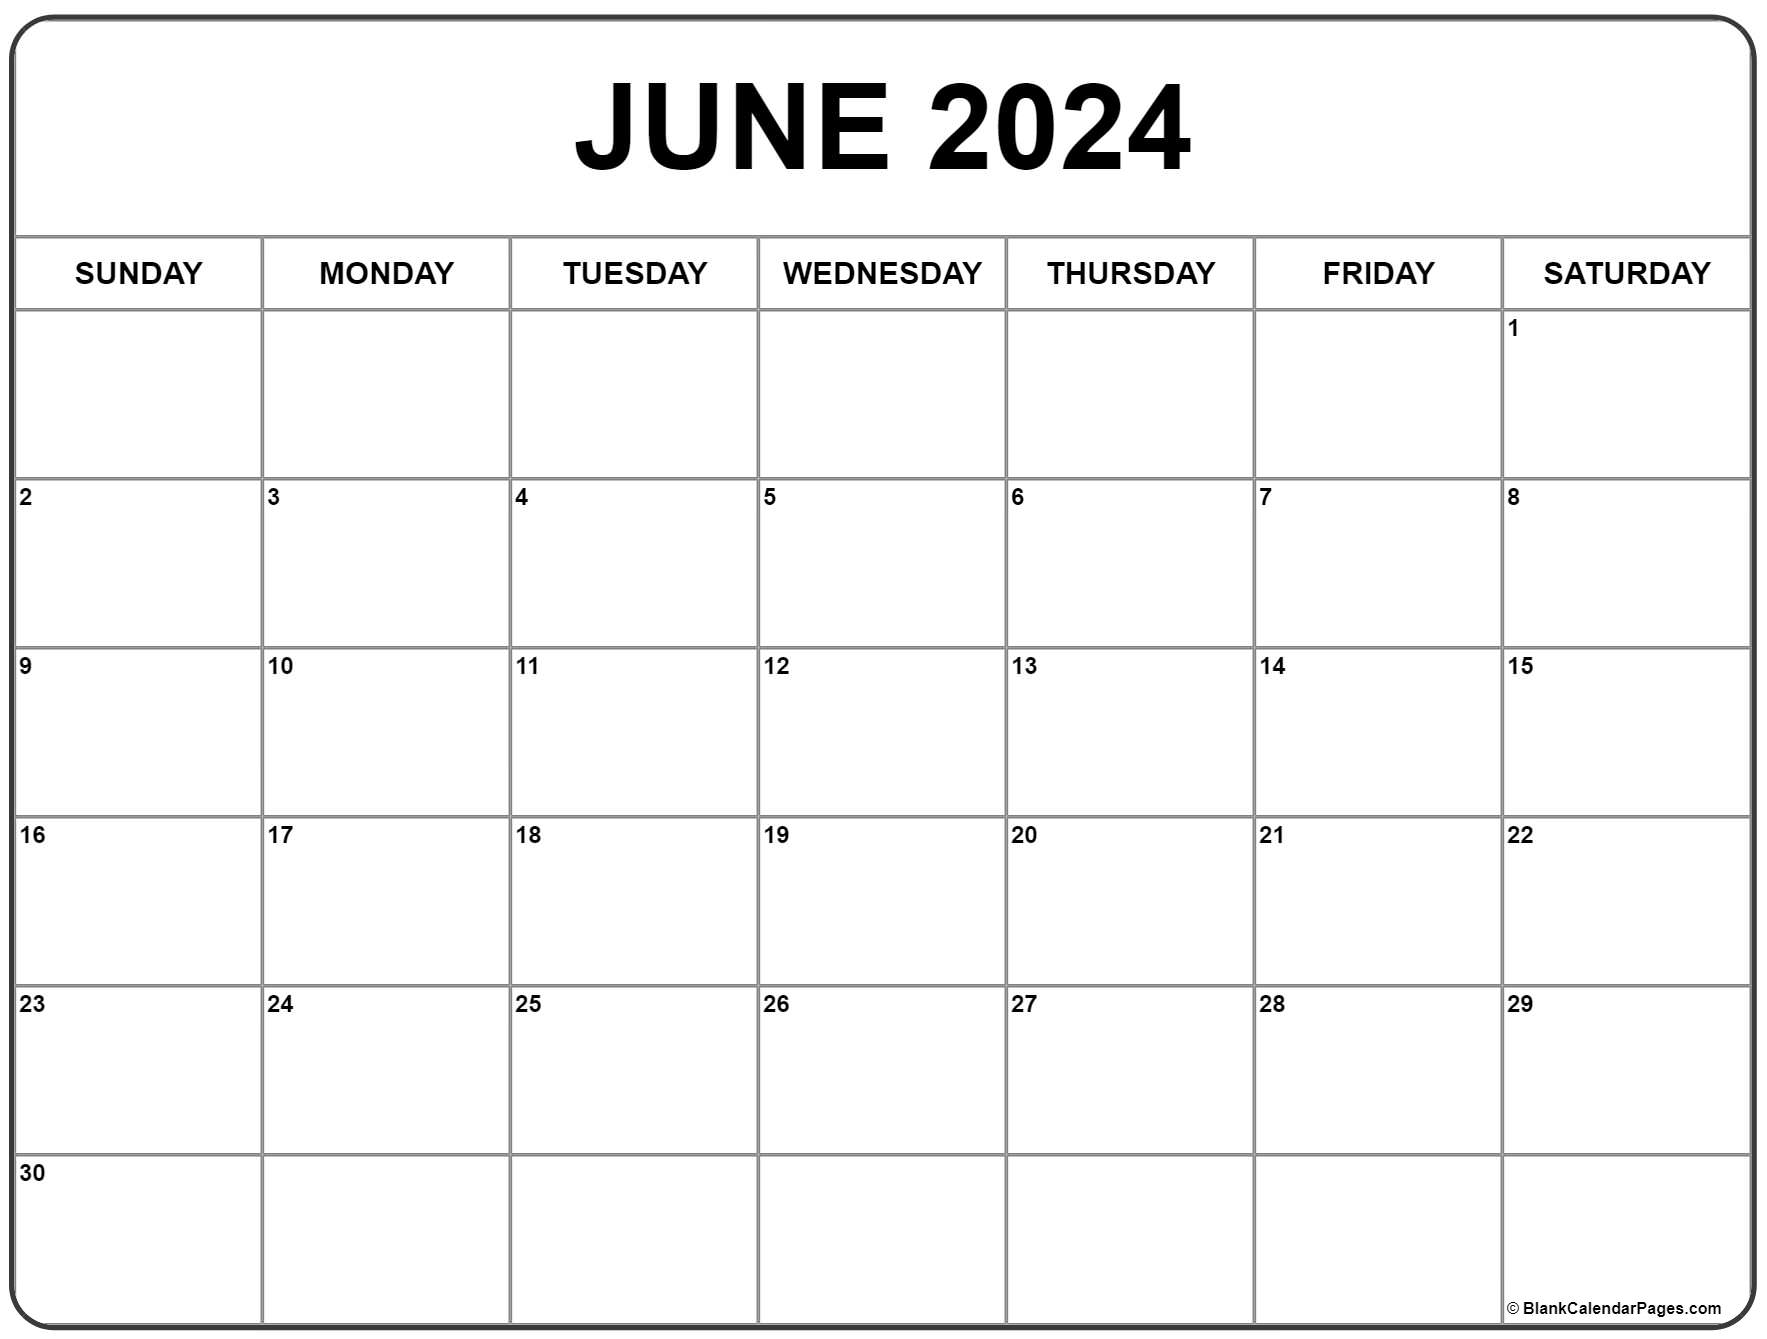 June 2024 Calendar | Free Printable Calendar for June 2024 Printable Calendar Free